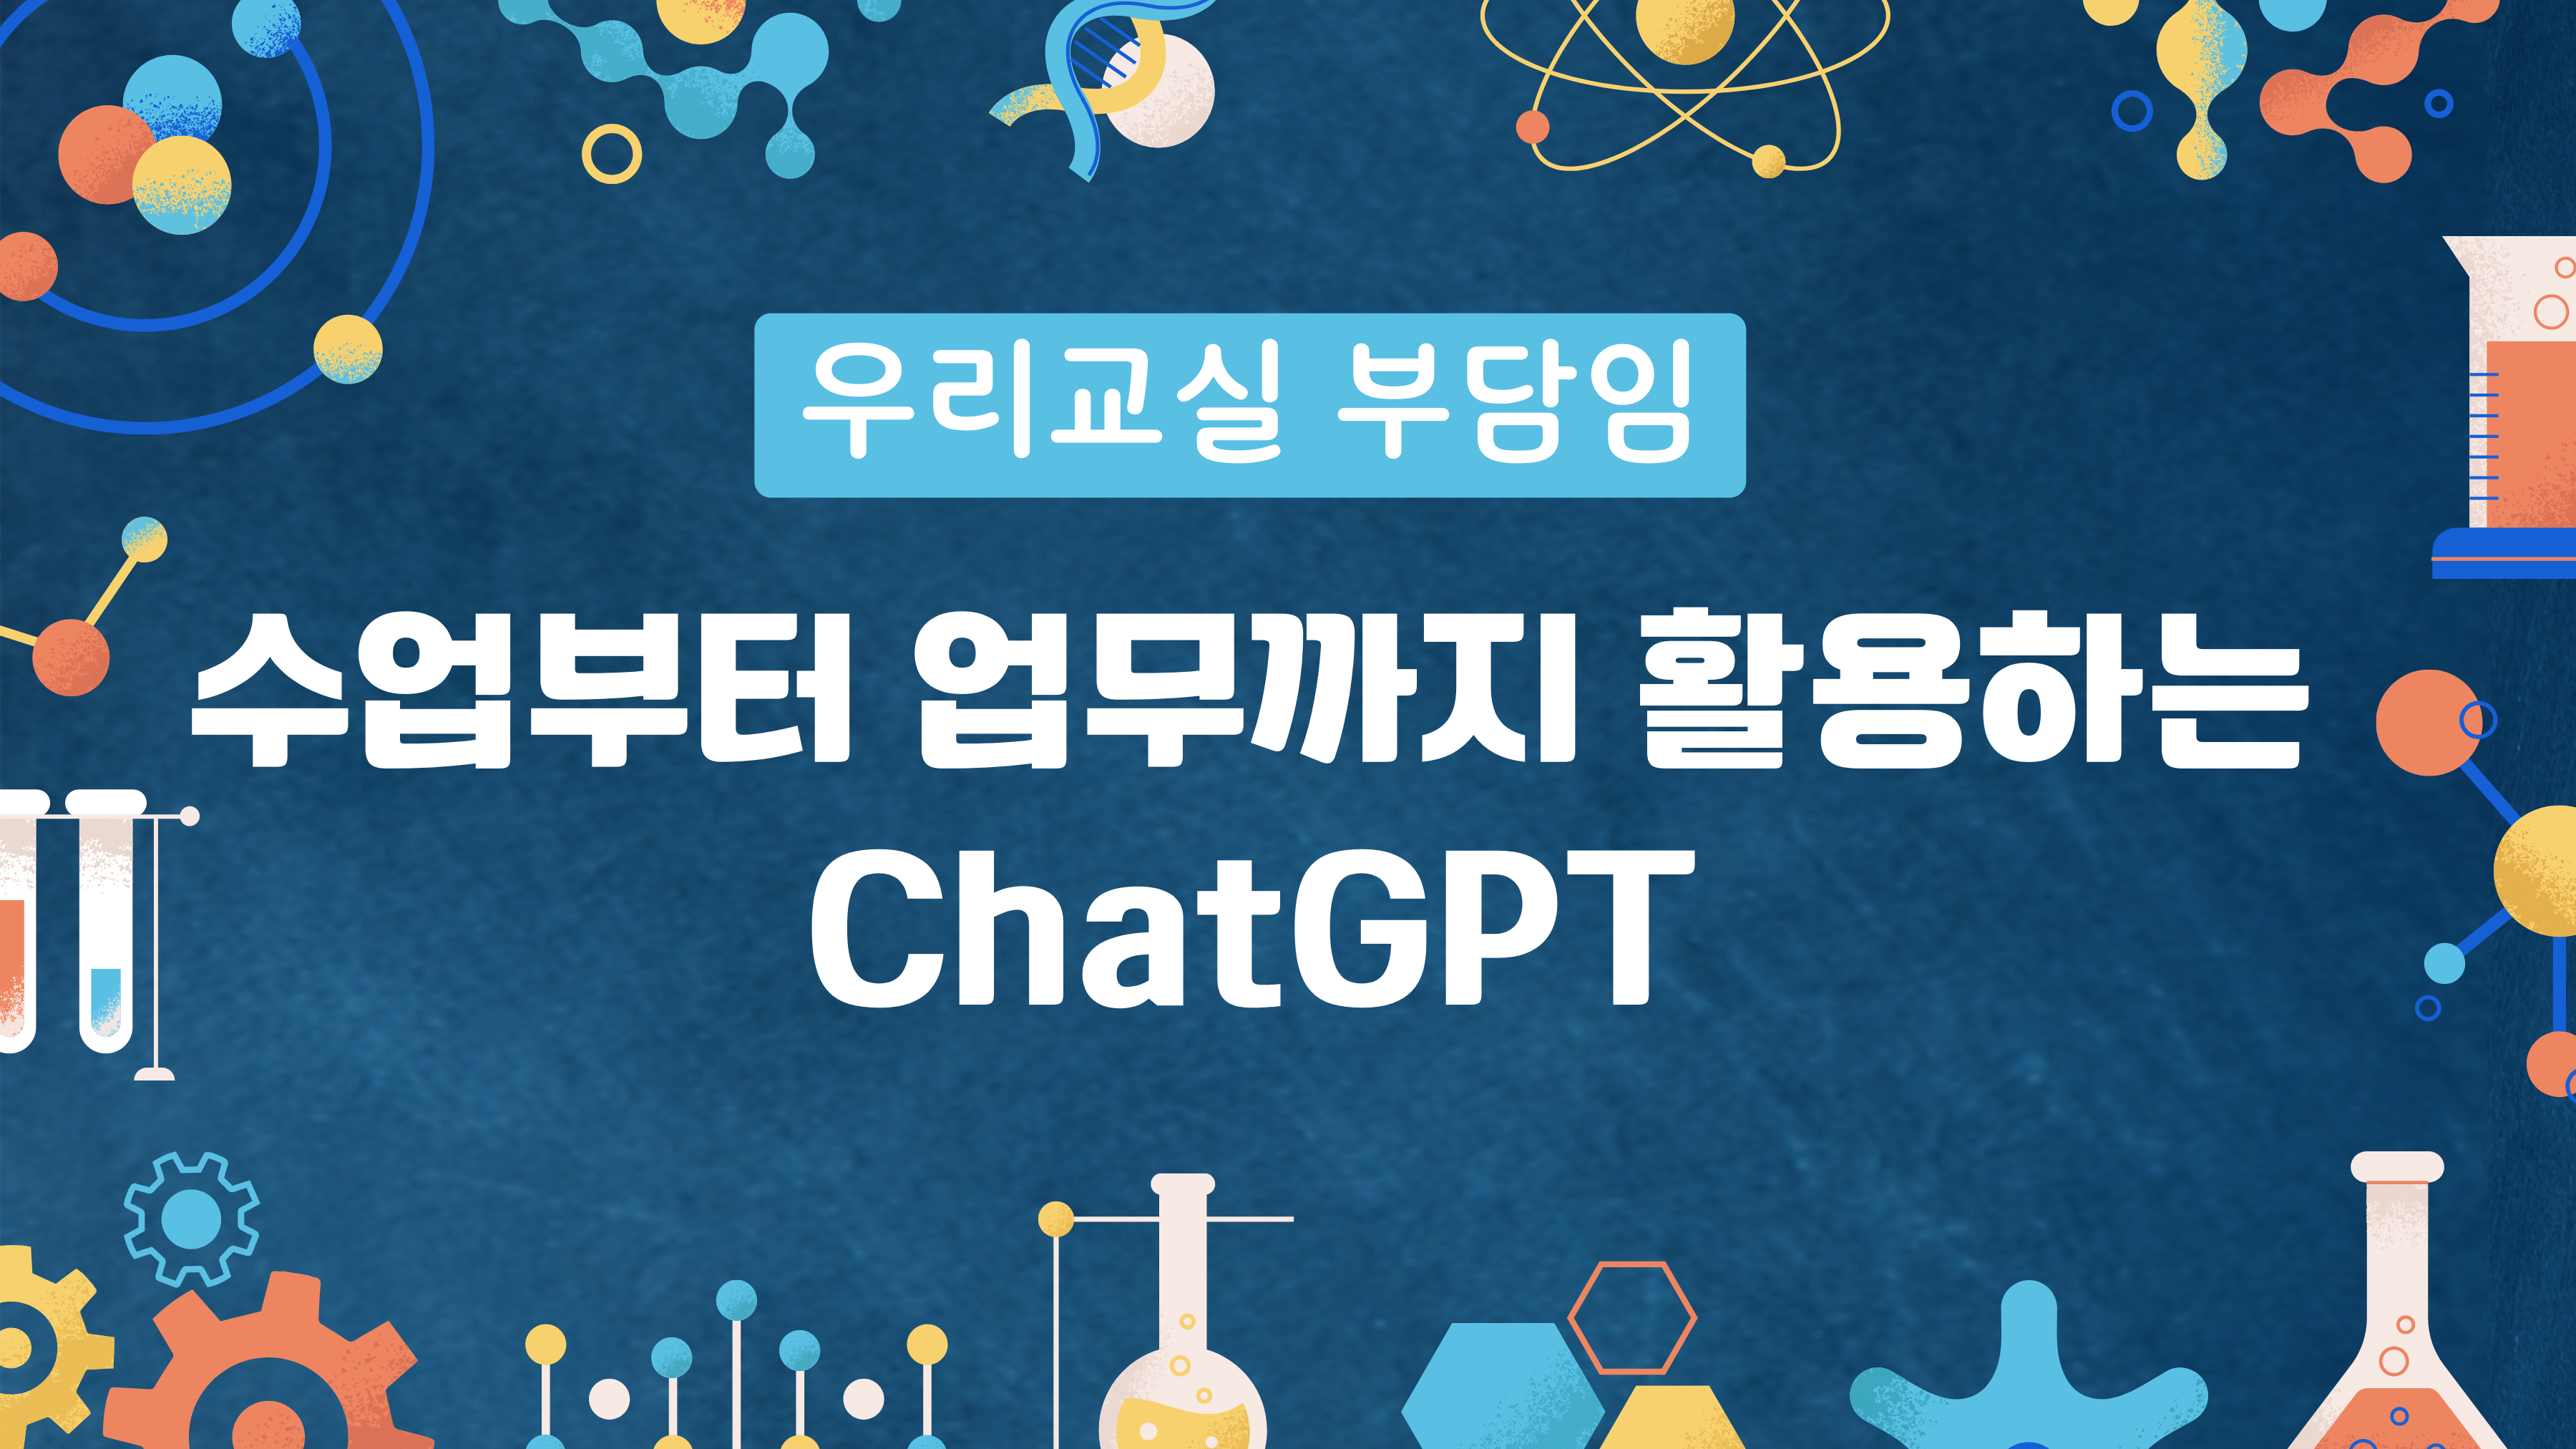 우리 교실 부담임 : 수업부터 업무까지 활용하는 ChatGPT